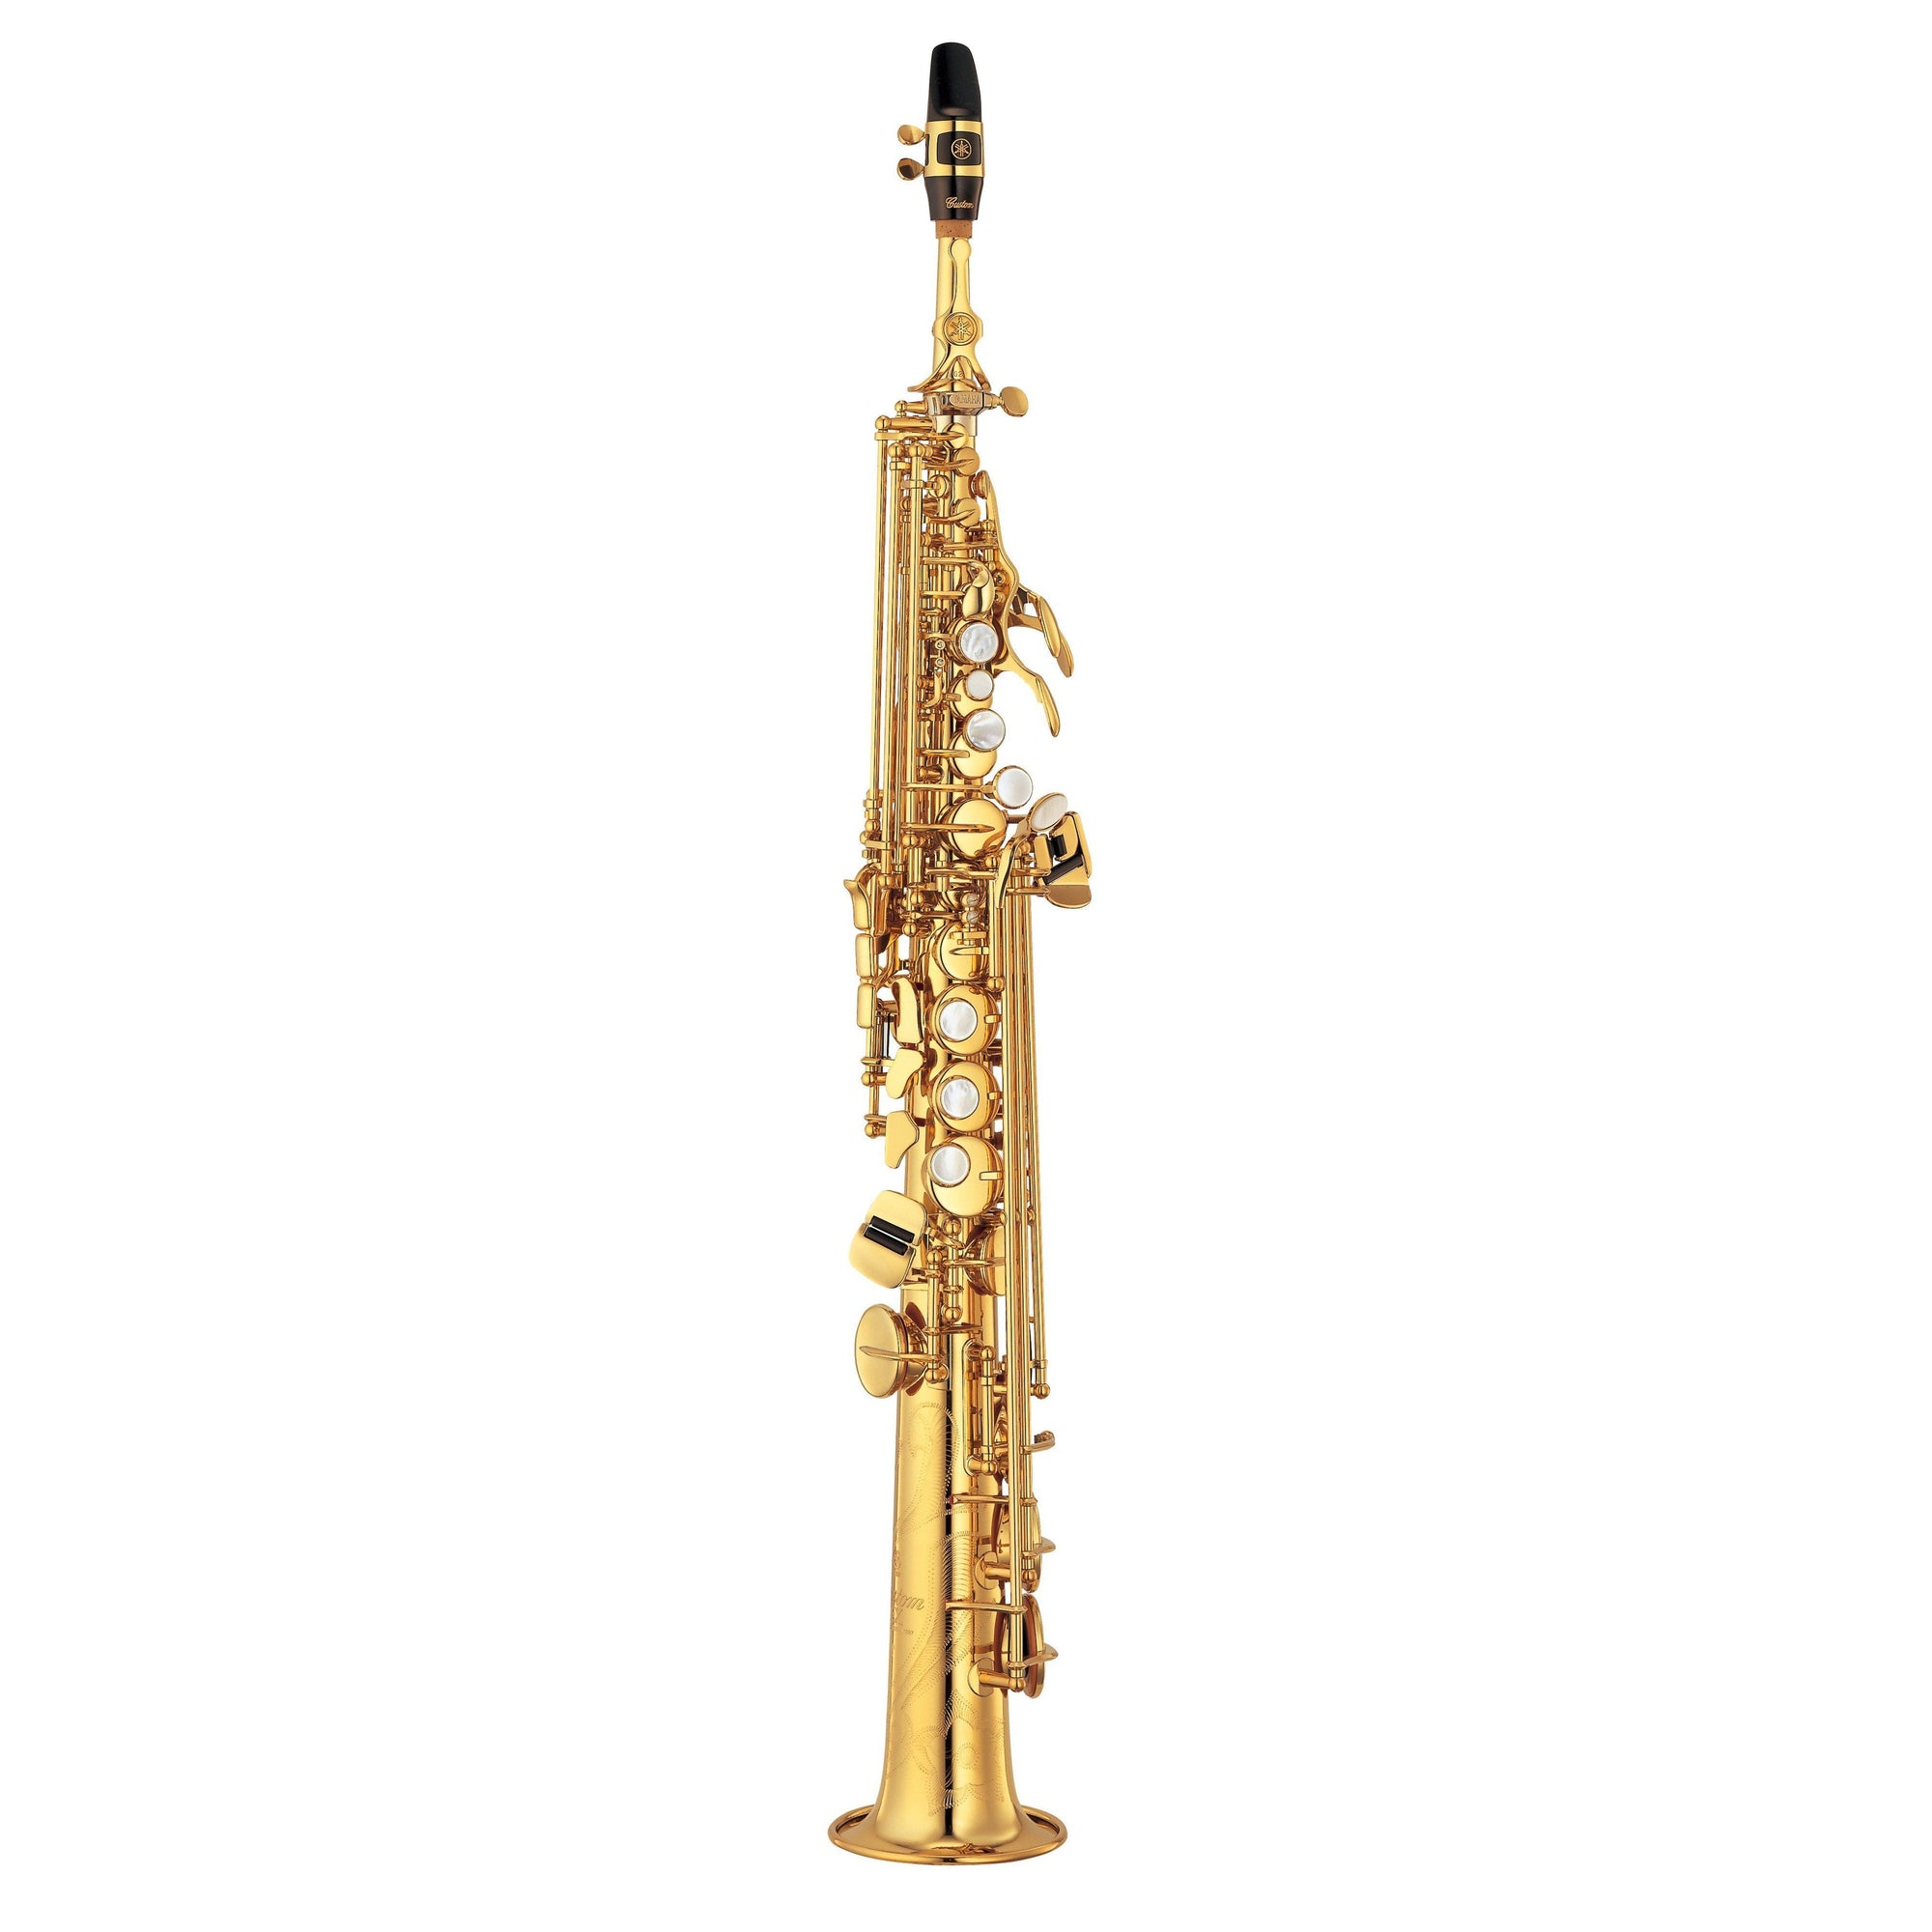 Yamaha - YSS-875EXHG - Custom EX Soprano Saxophone-Saxophone-Yamaha-Music Elements